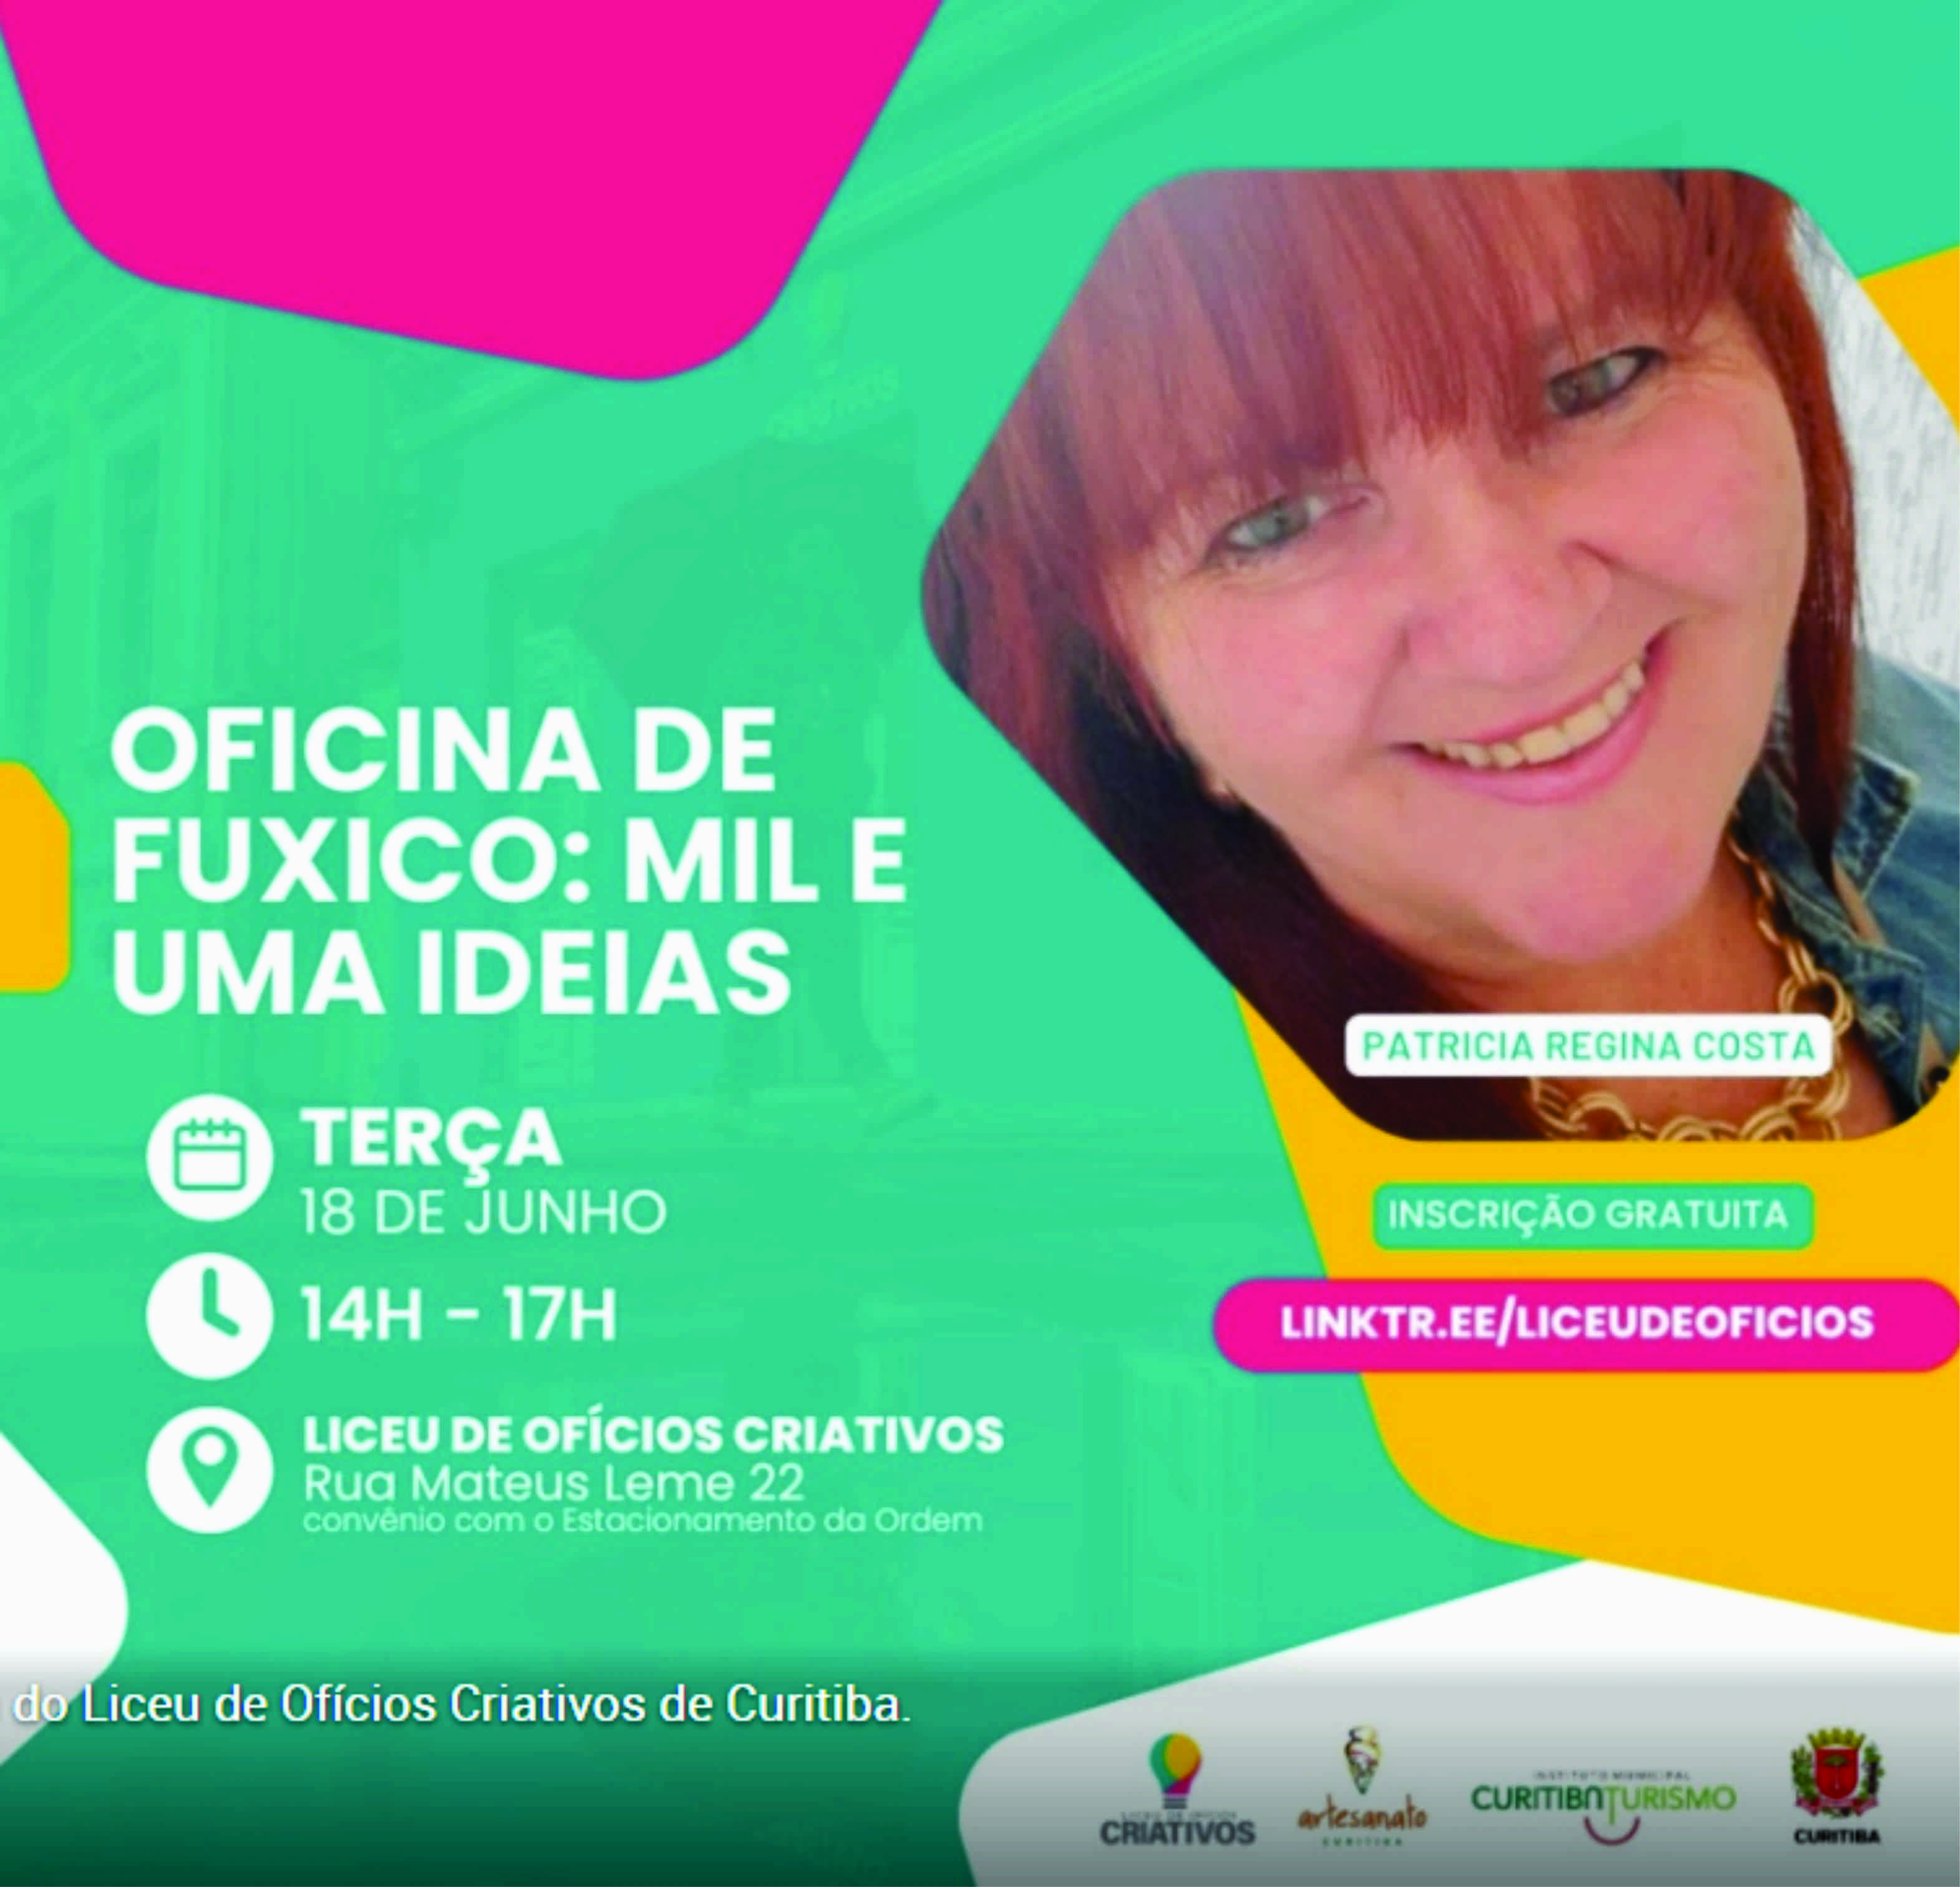 Confira a agenda de cursos e workshops do Liceu de Ofícios Criativos de Curitiba